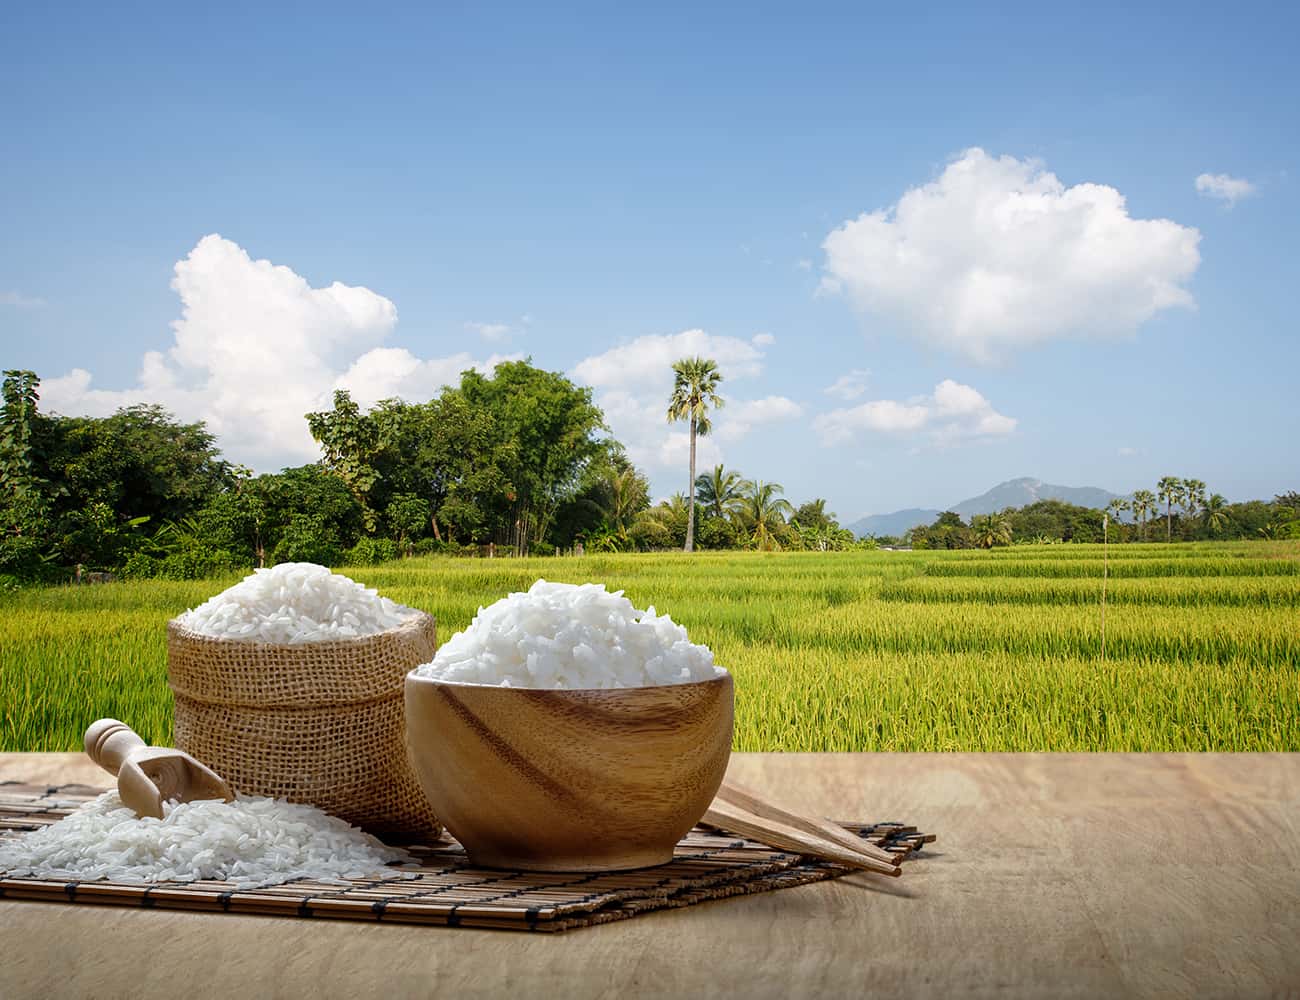 日本の主食 お米について知ろう。「米」は善（膳）!?